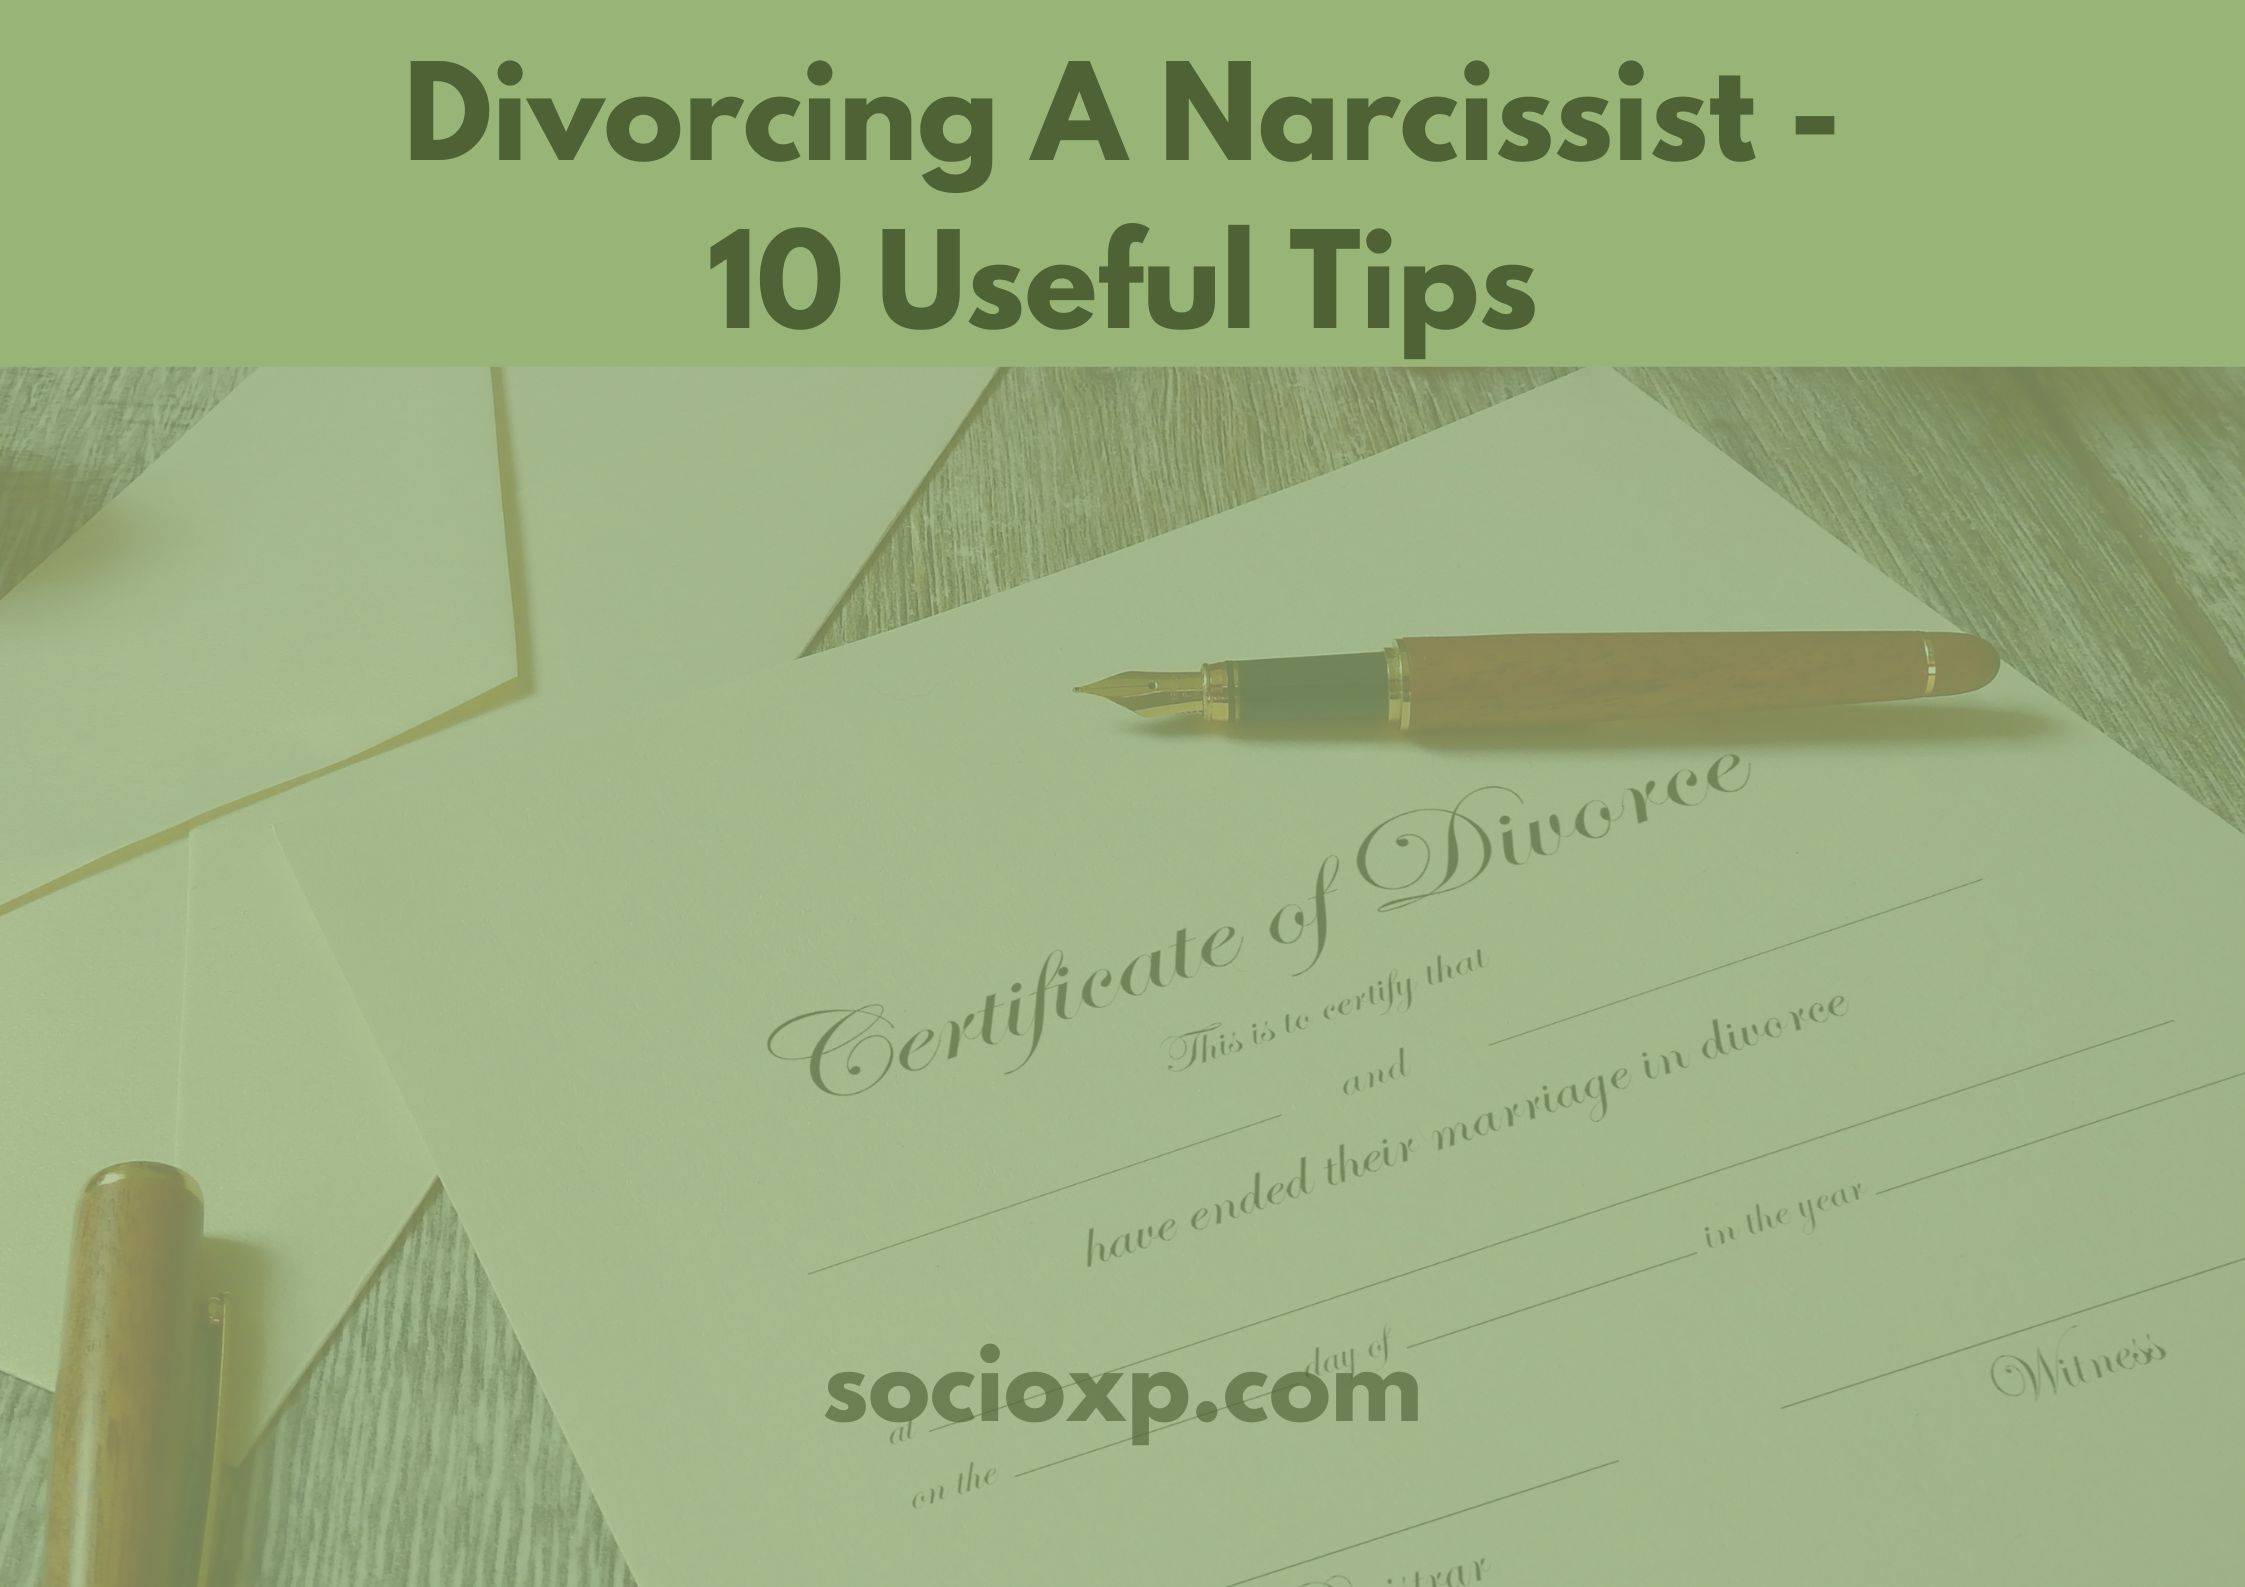 Divorcing A Narcissist - 10 Useful Tips